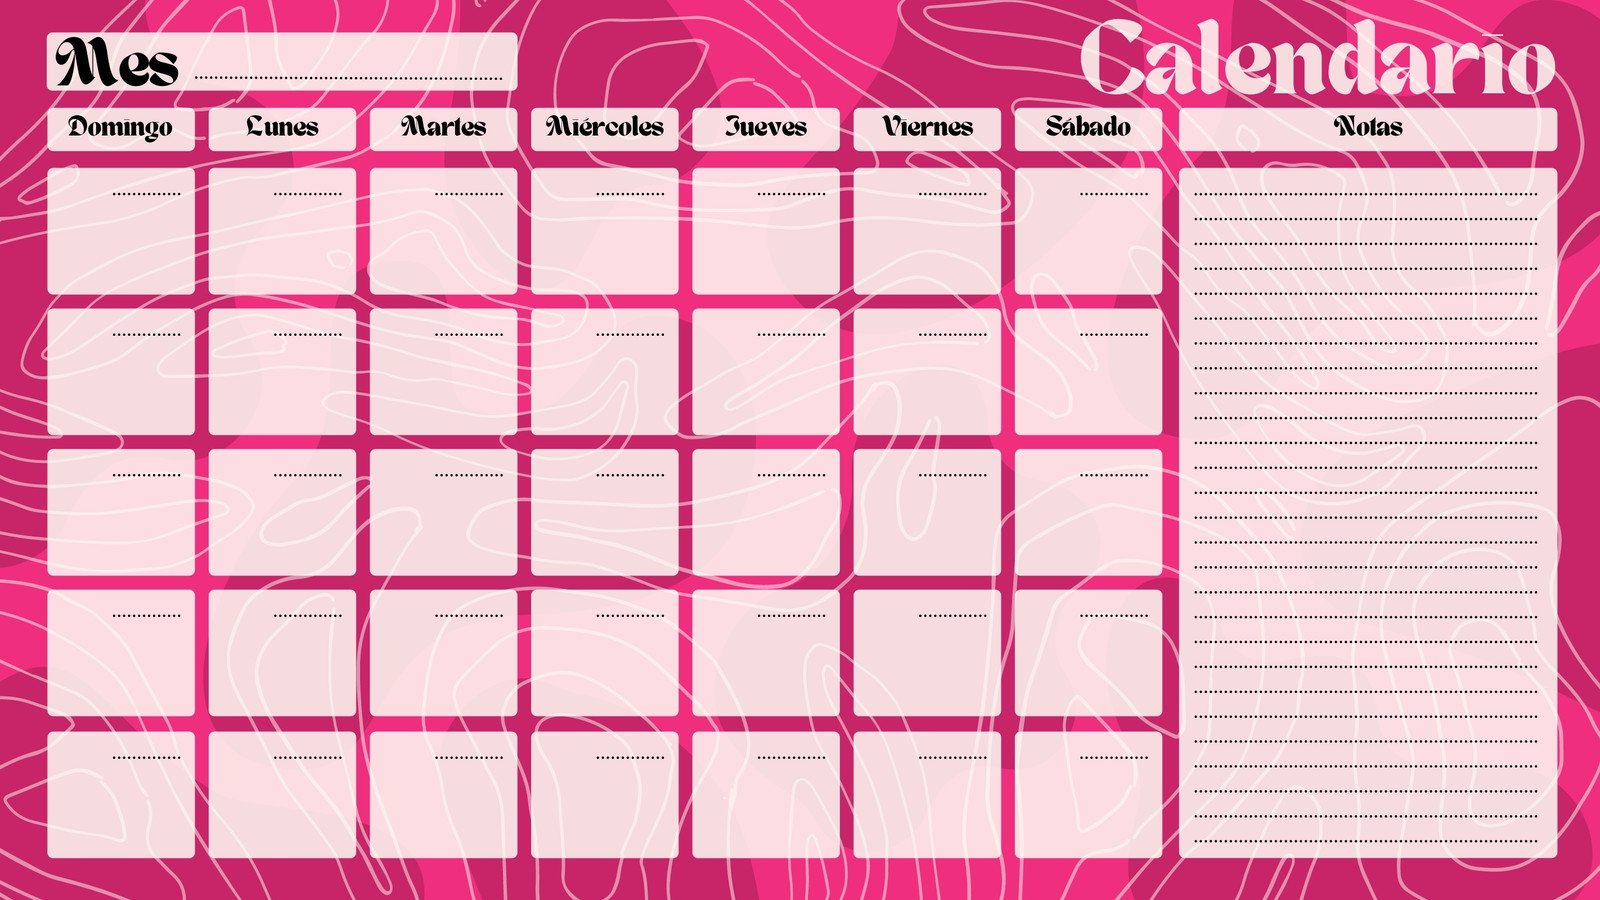 Calendario Mes A Mes Plantillas de calendarios gratis | Canva